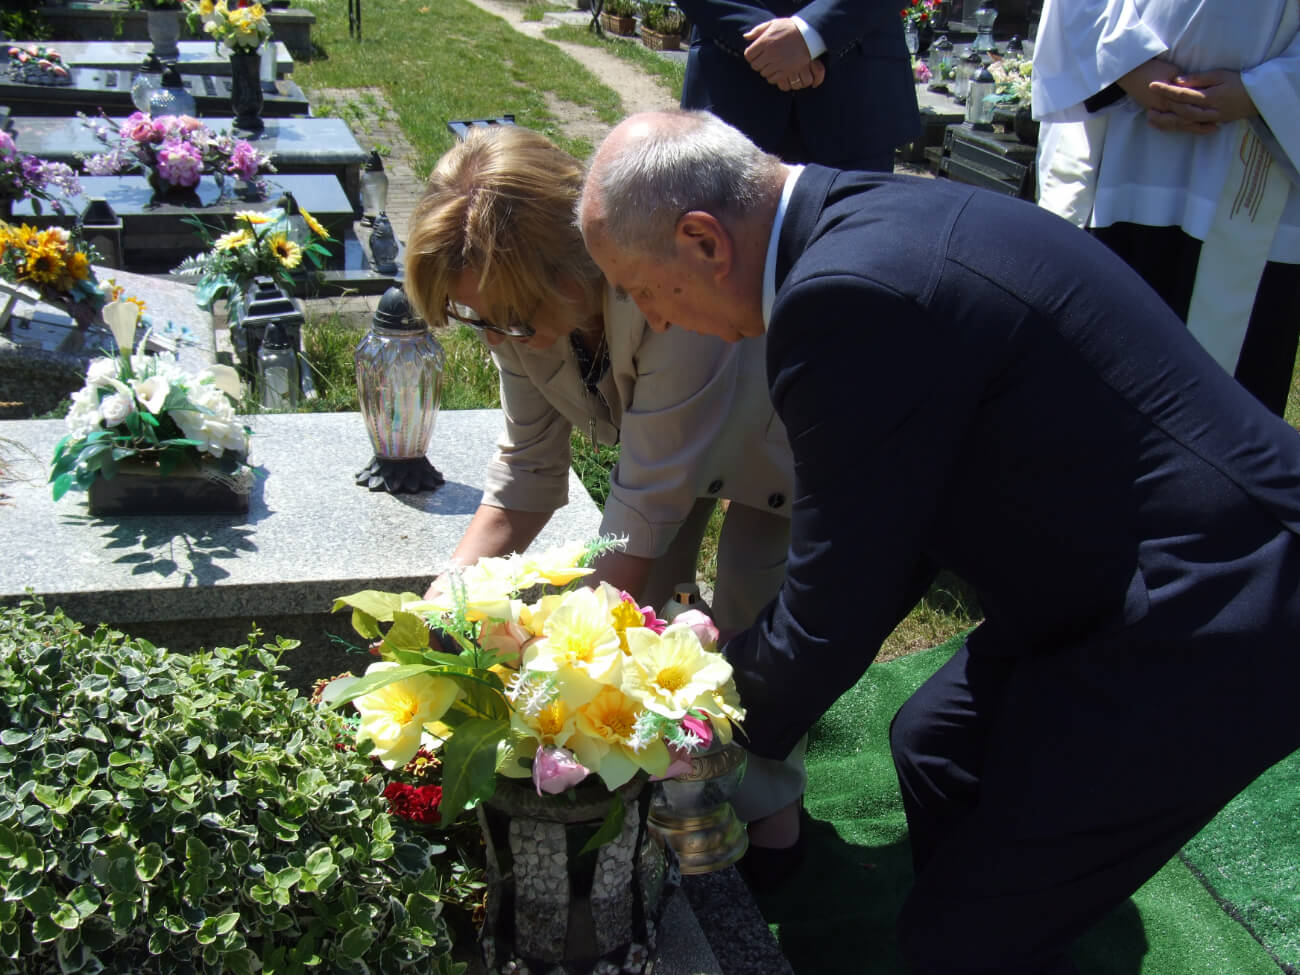 Po uroczystości rodzina złożyła kwiaty na grobie pielęgniarki. Zdj. Dominika